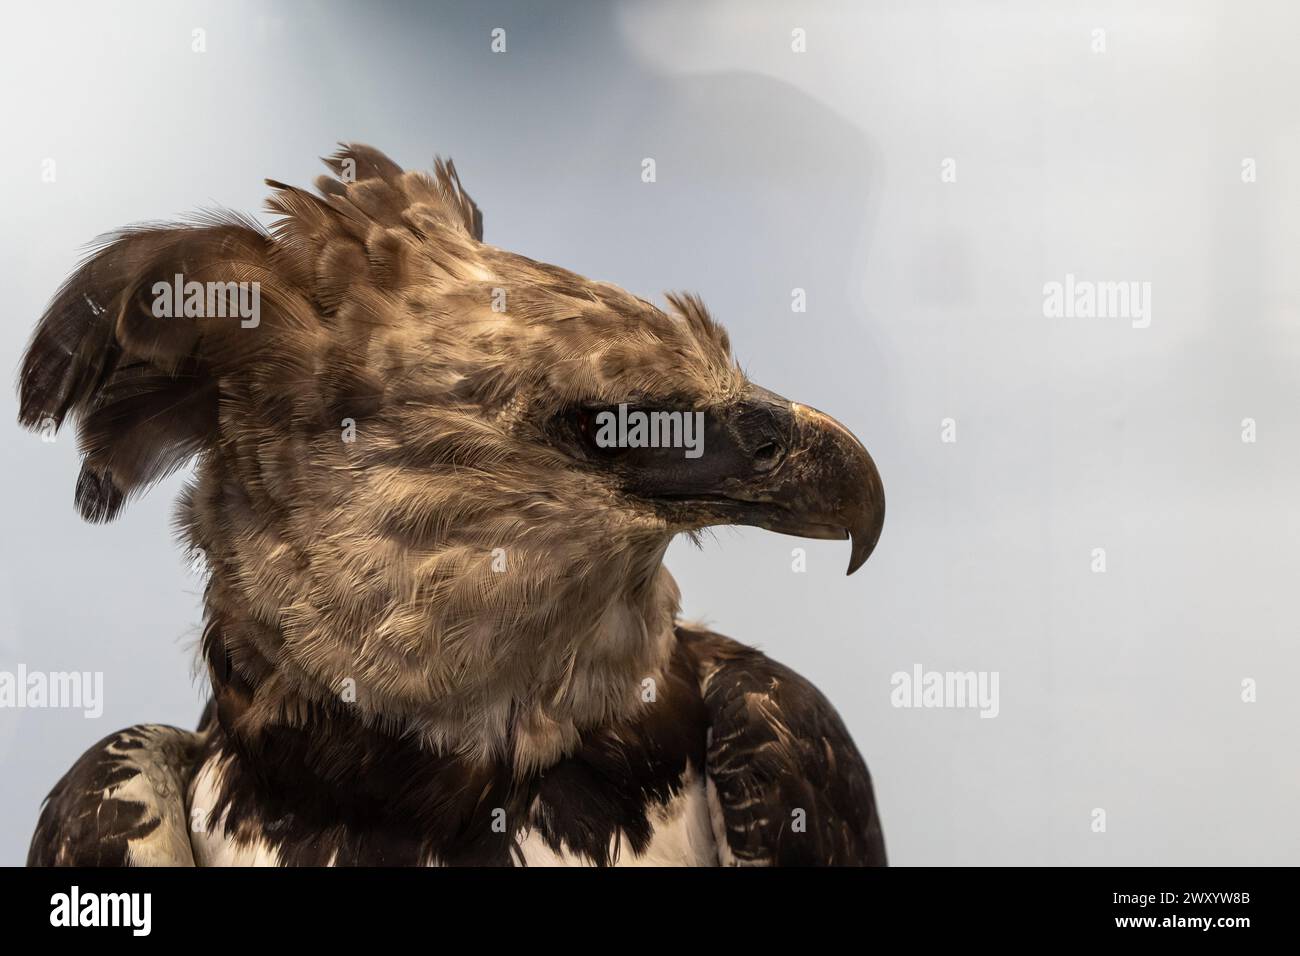 vista del profilo di un'aquila marziale, evidenziandone il becco acuto e l'occhio acuto su uno sfondo morbido Foto Stock